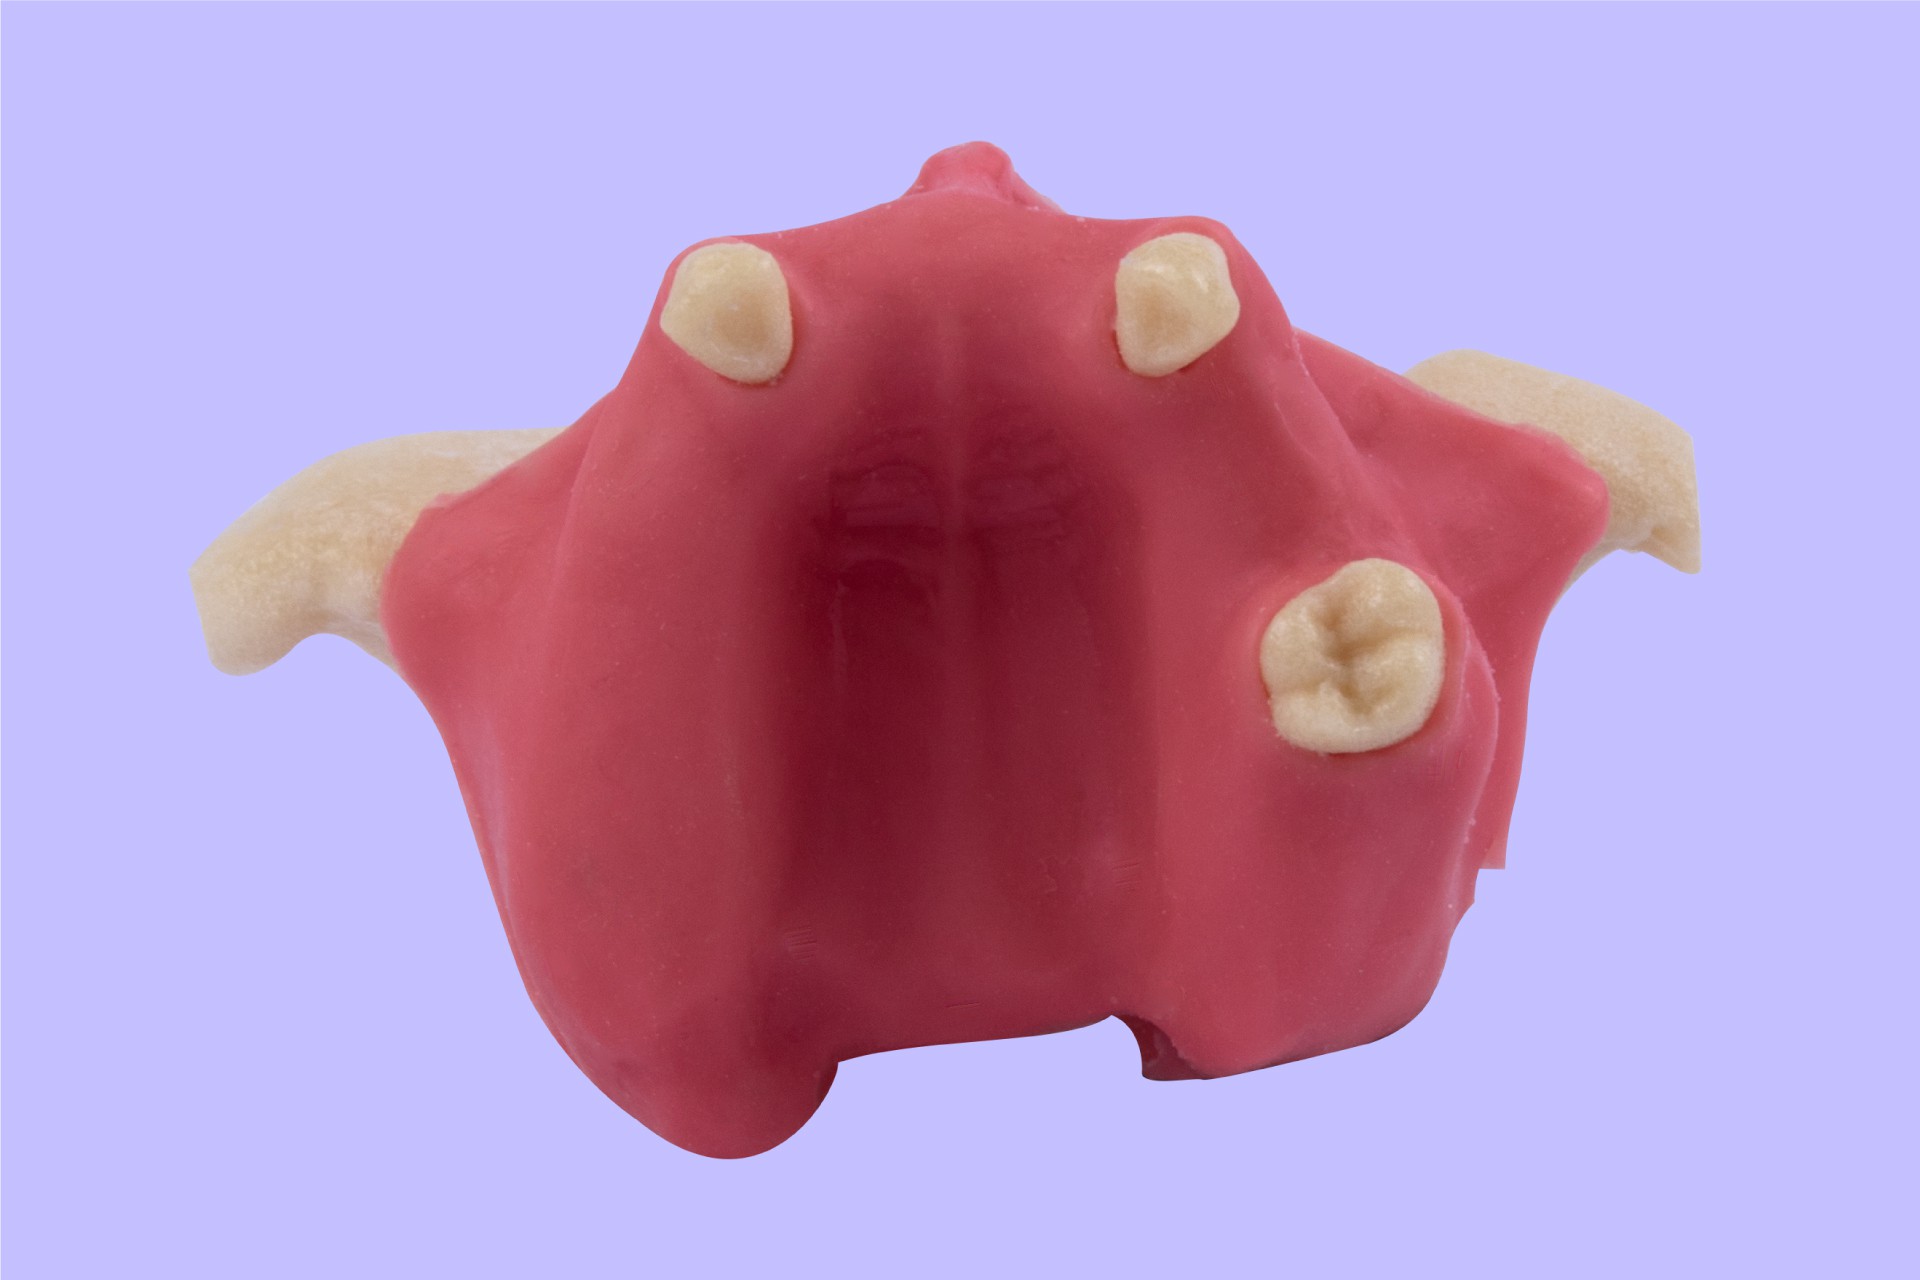 فک بالا بی دندانی به همراه سینوس و خروجی های عصب همراه لثه نرم و پریوست